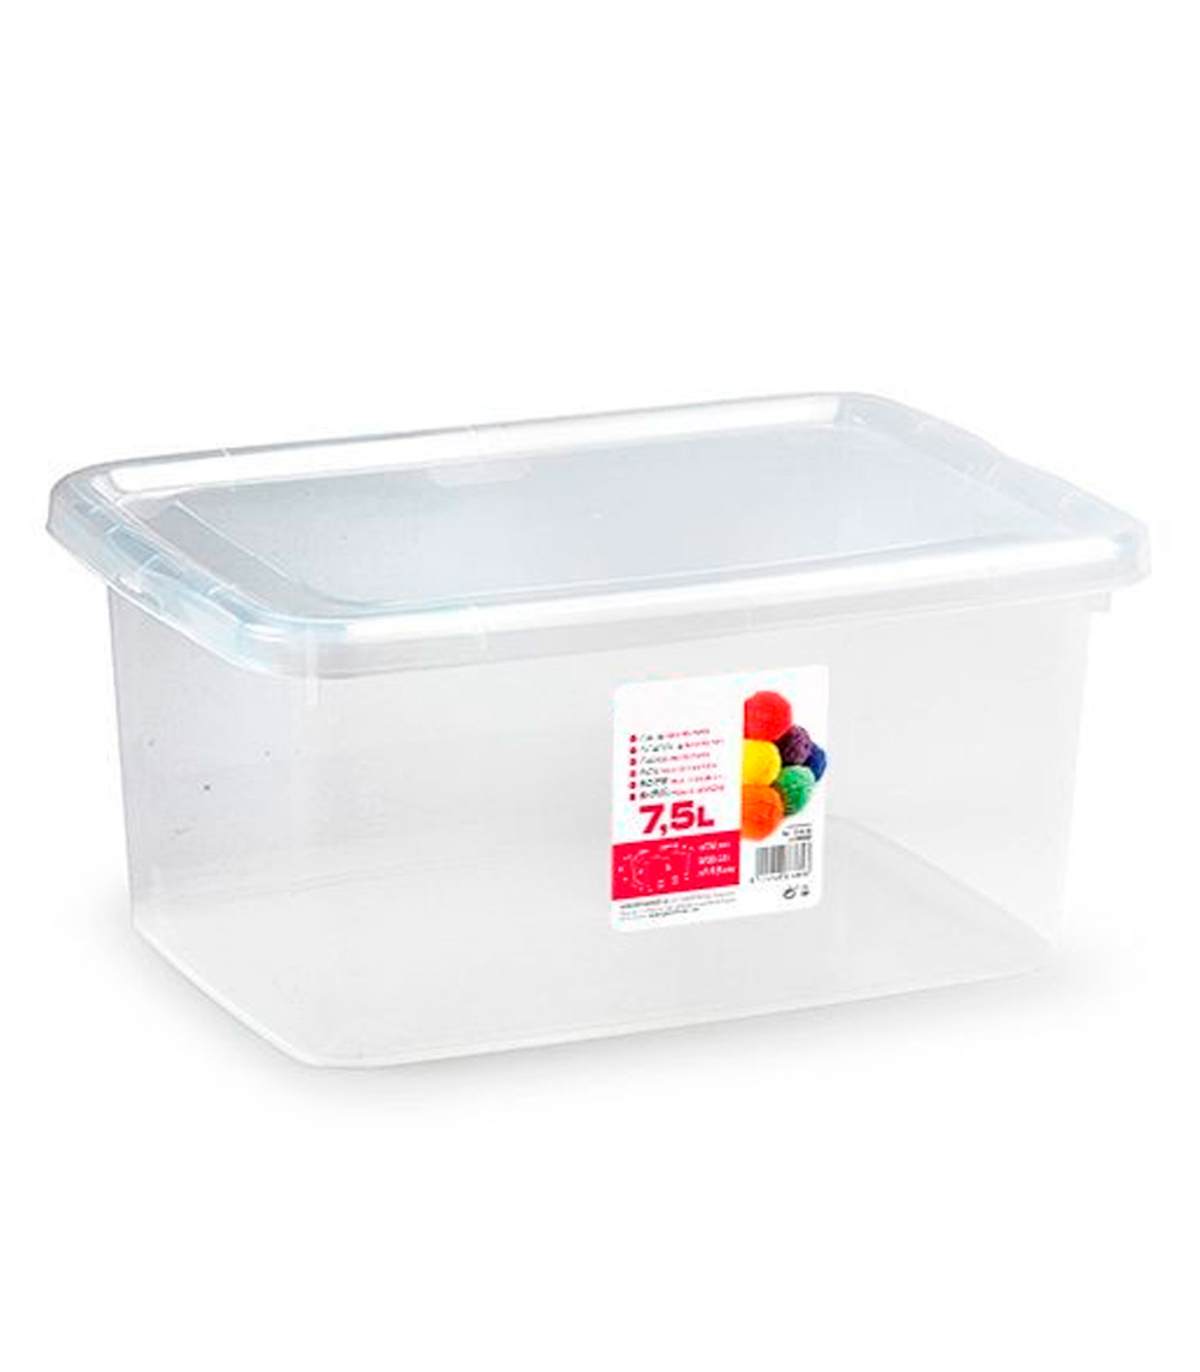 Caja de plástico con tapa - N.o 28 transparente - cajón de almacenaje, ordenación, almacenamiento, objetos - 7,5 litros, 24 x 33 x 15,5 cm